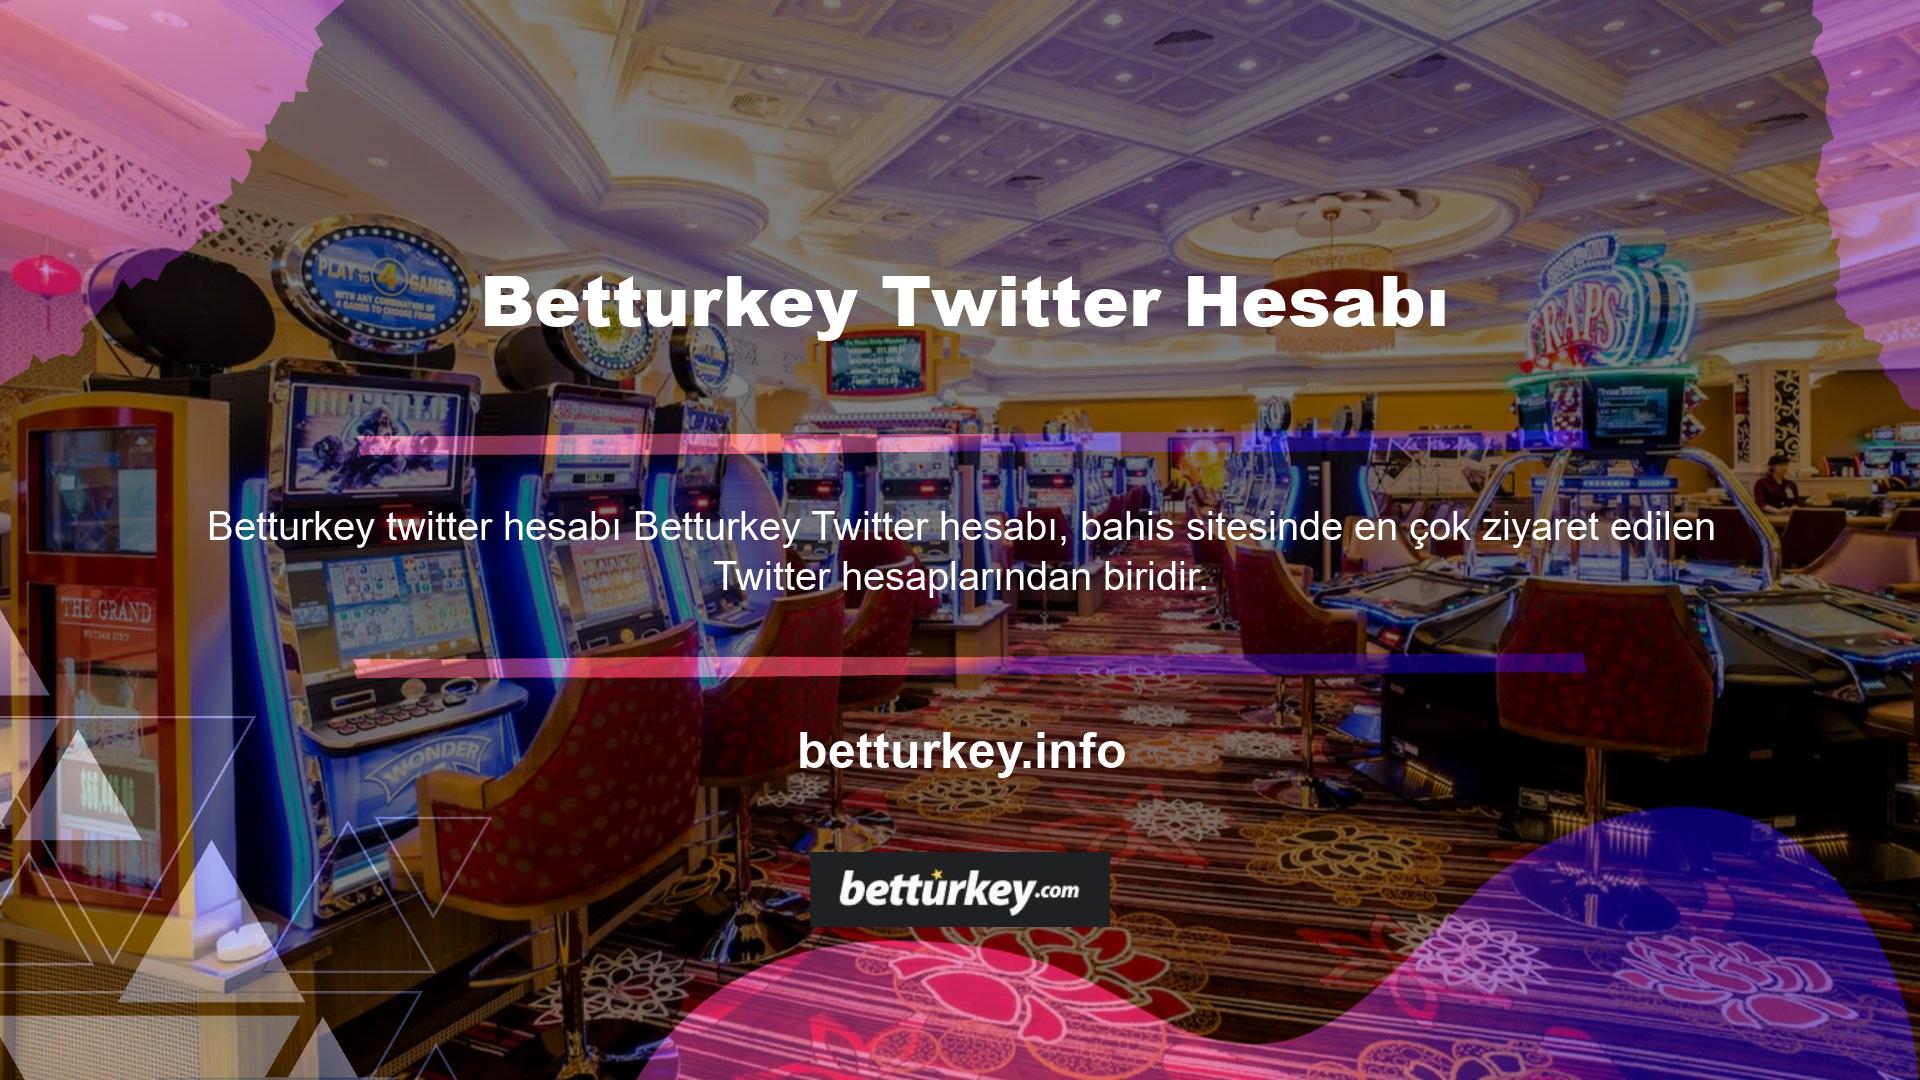 Sitenin Betturkey Twitter hesabı sosyal medya hesapları Twitter hesabı hem takipçi sayısı hem de paylaşılan etkileşimler açısından binlerce farklı bahisçiye ulaşmaktadır